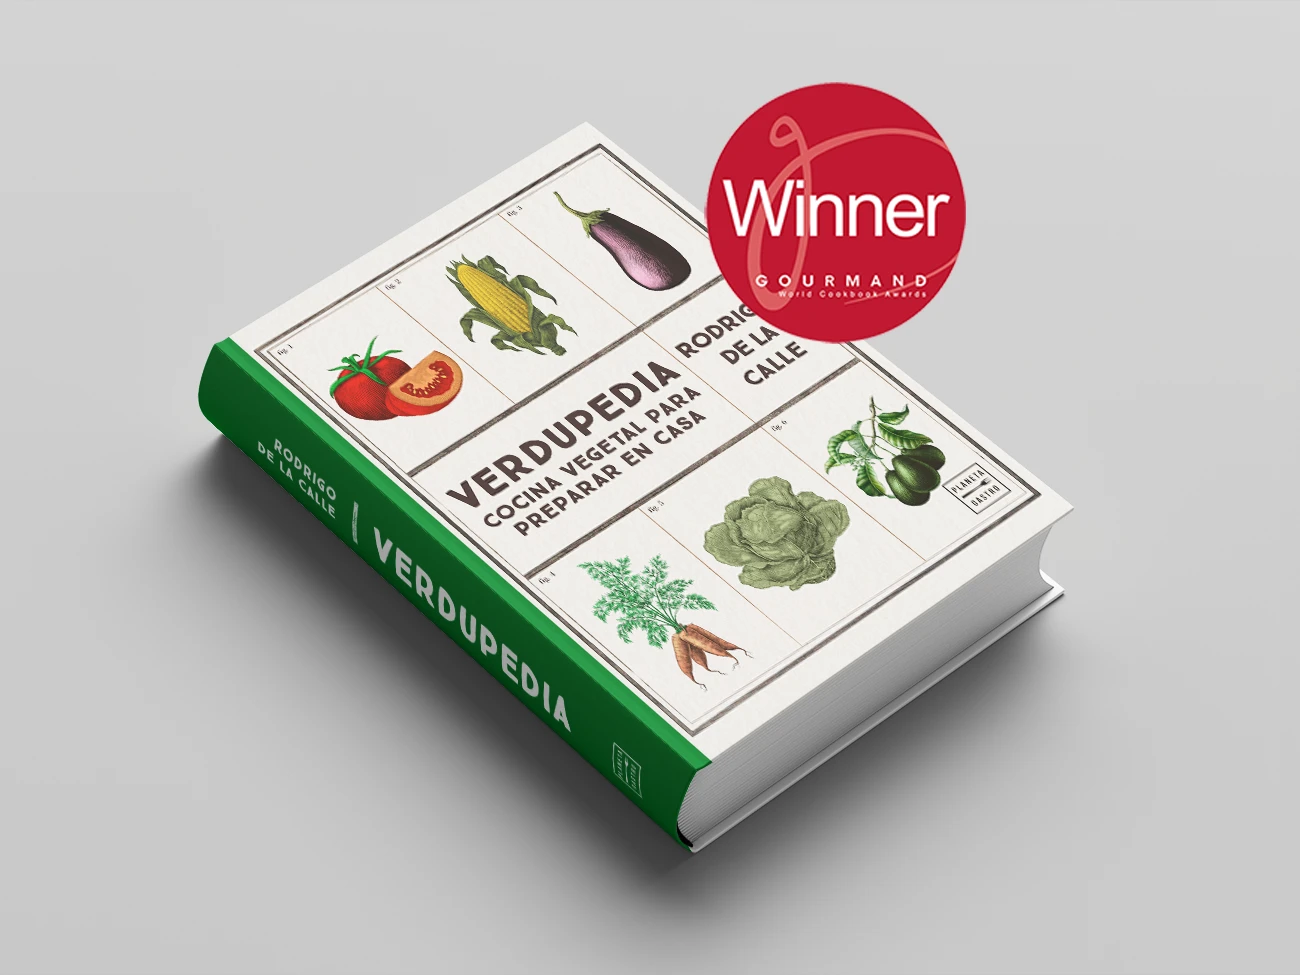 Diseño gráfico editorial del libro de cocina de verduras Verdupedia